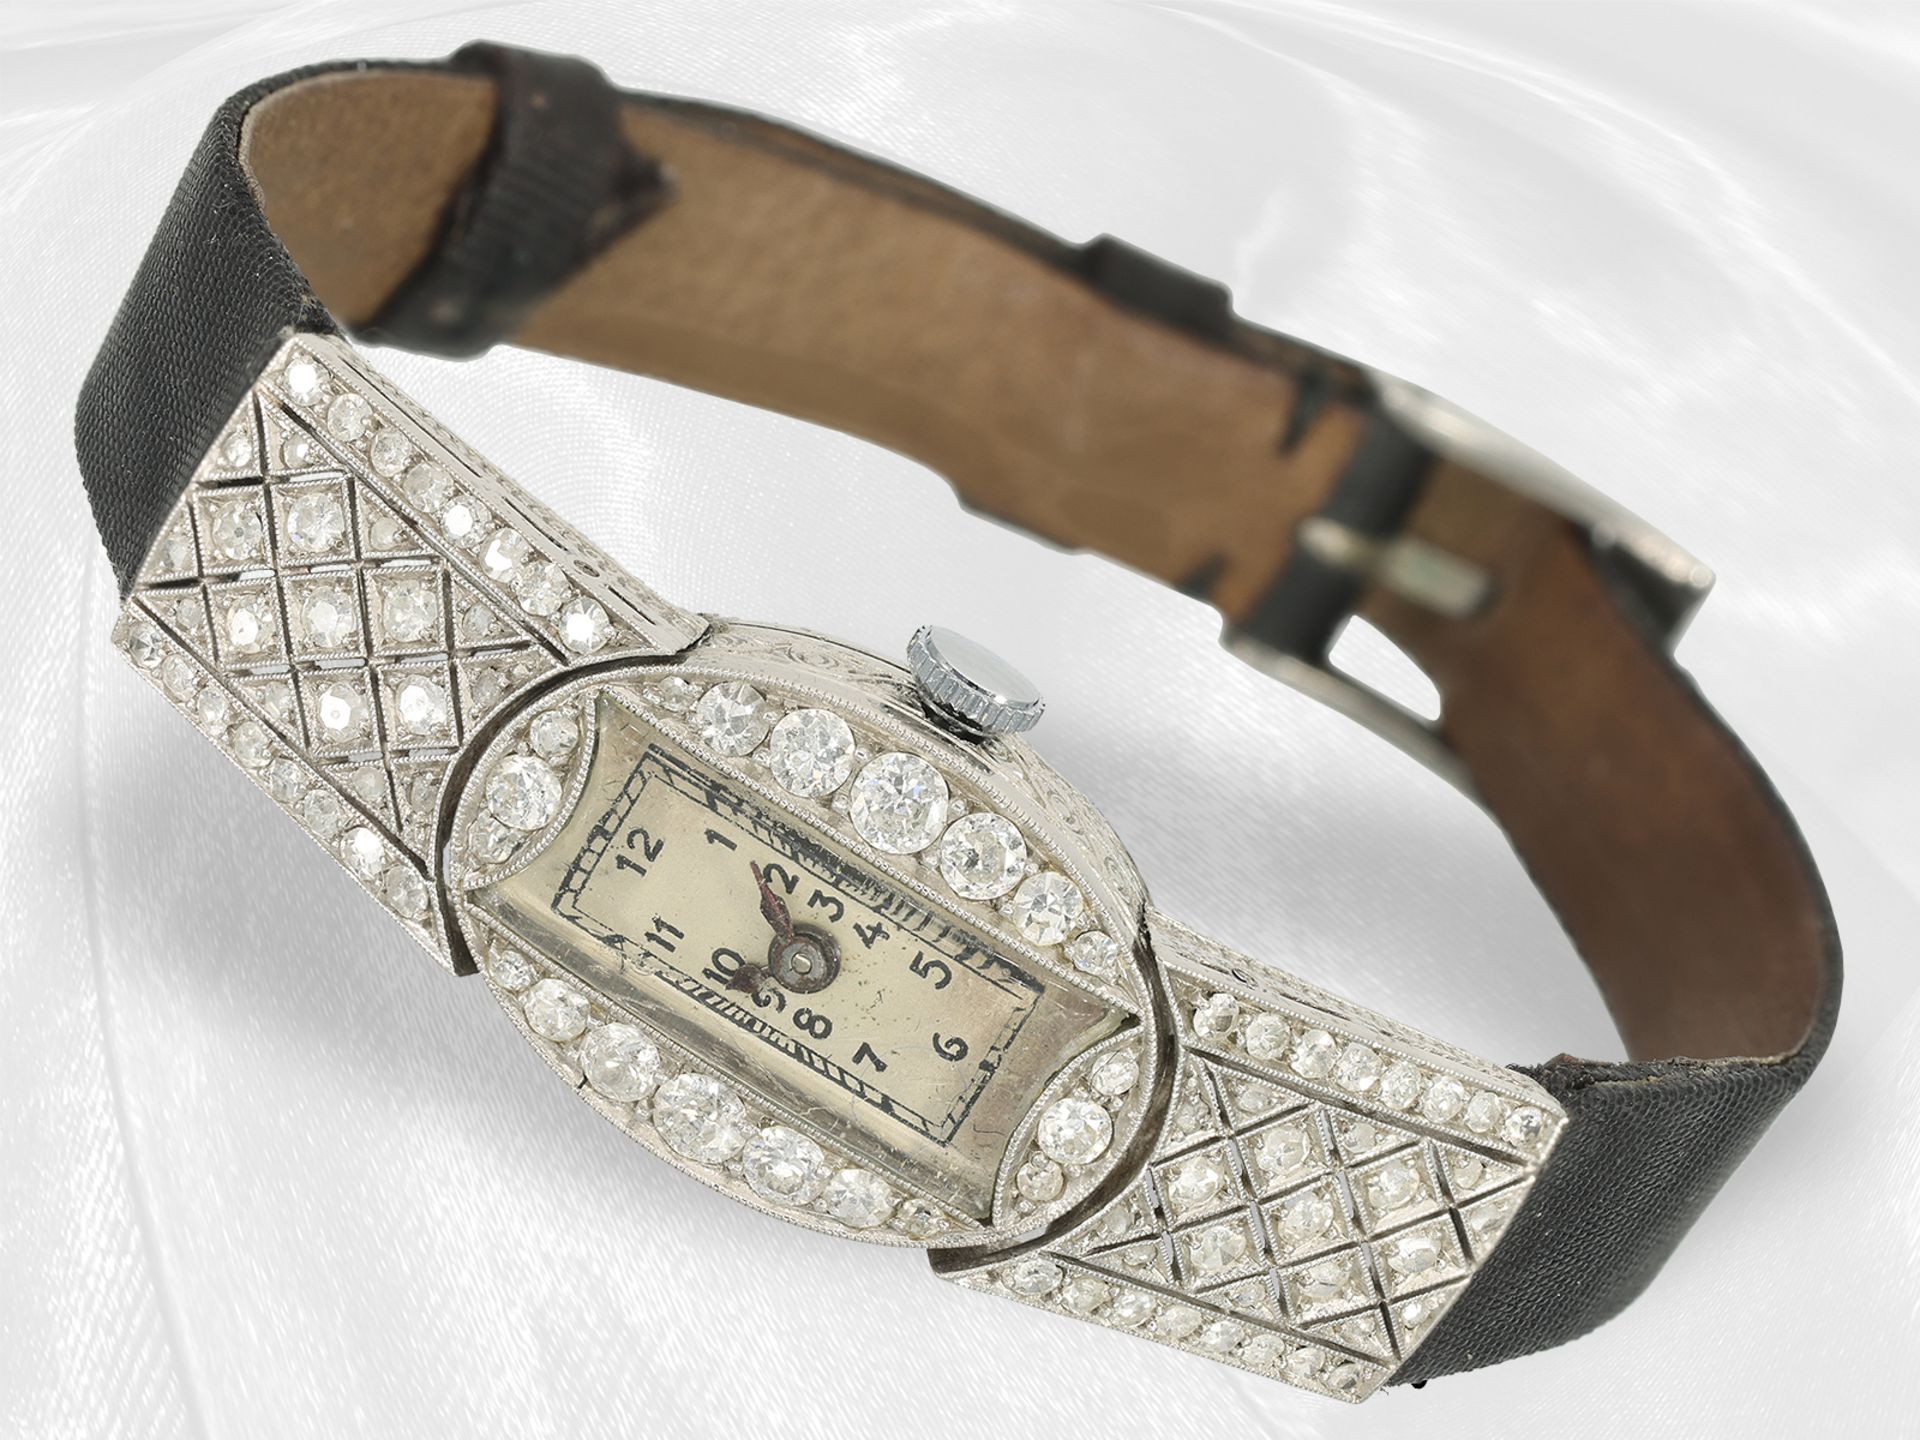 Armbanduhr: attraktive Art déco Damenuhr aus Platin mit Diamantbesatz, ca. 2ct, ca. 1920 - Bild 2 aus 4